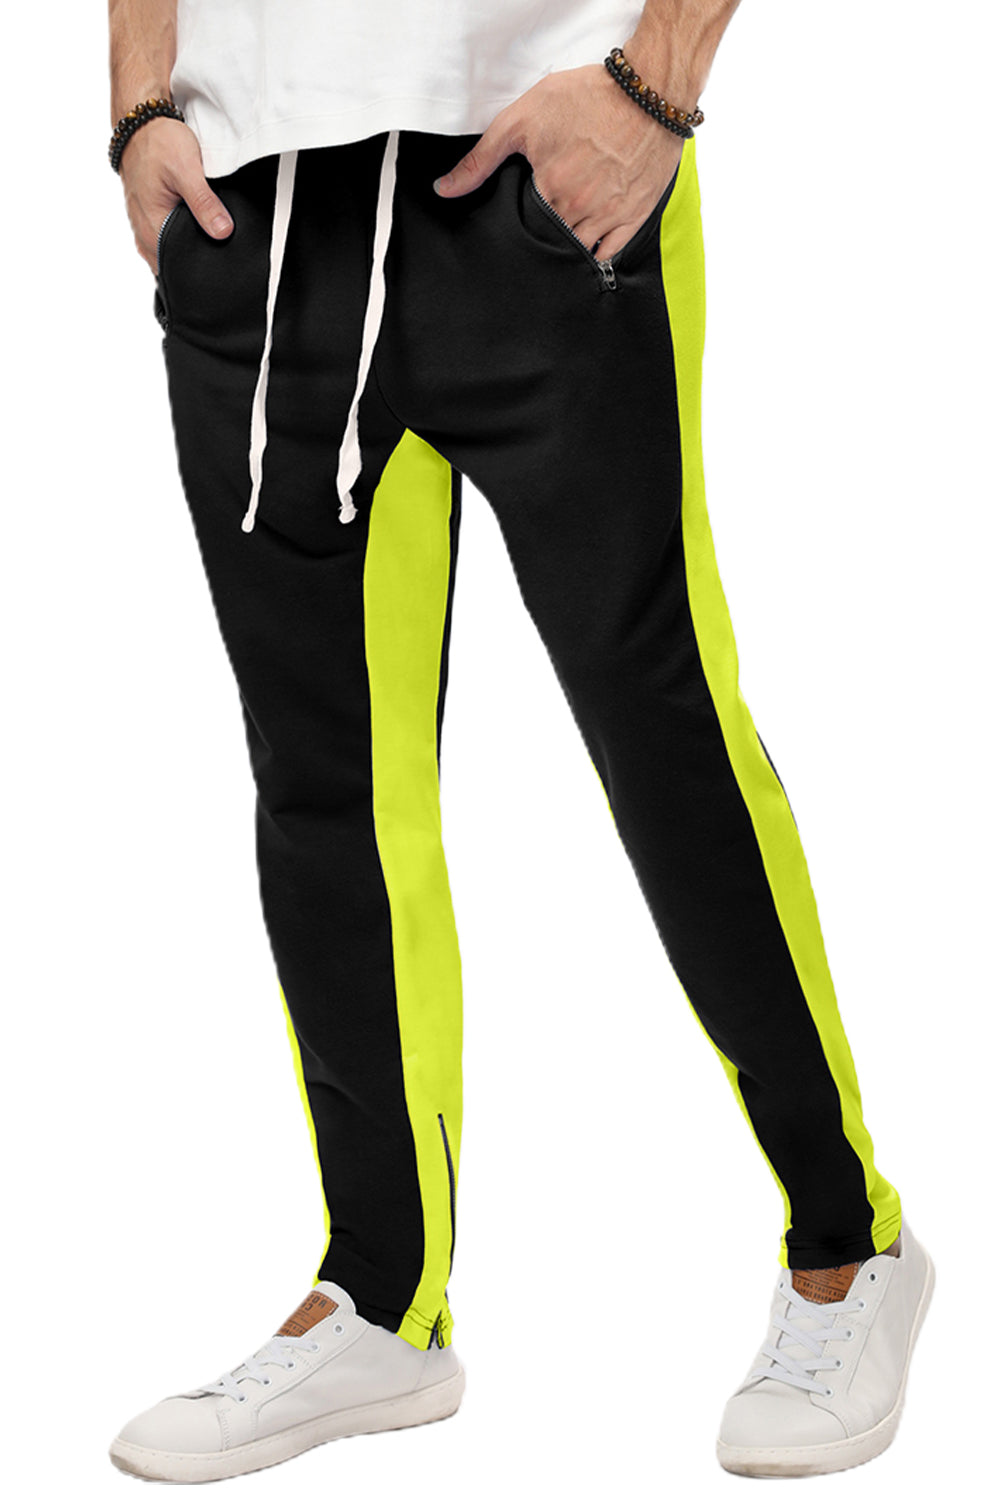 Yellow Colorblock Patchwork Zipper Casual Mens Joggers Men's Pants JT's Designer Fashion